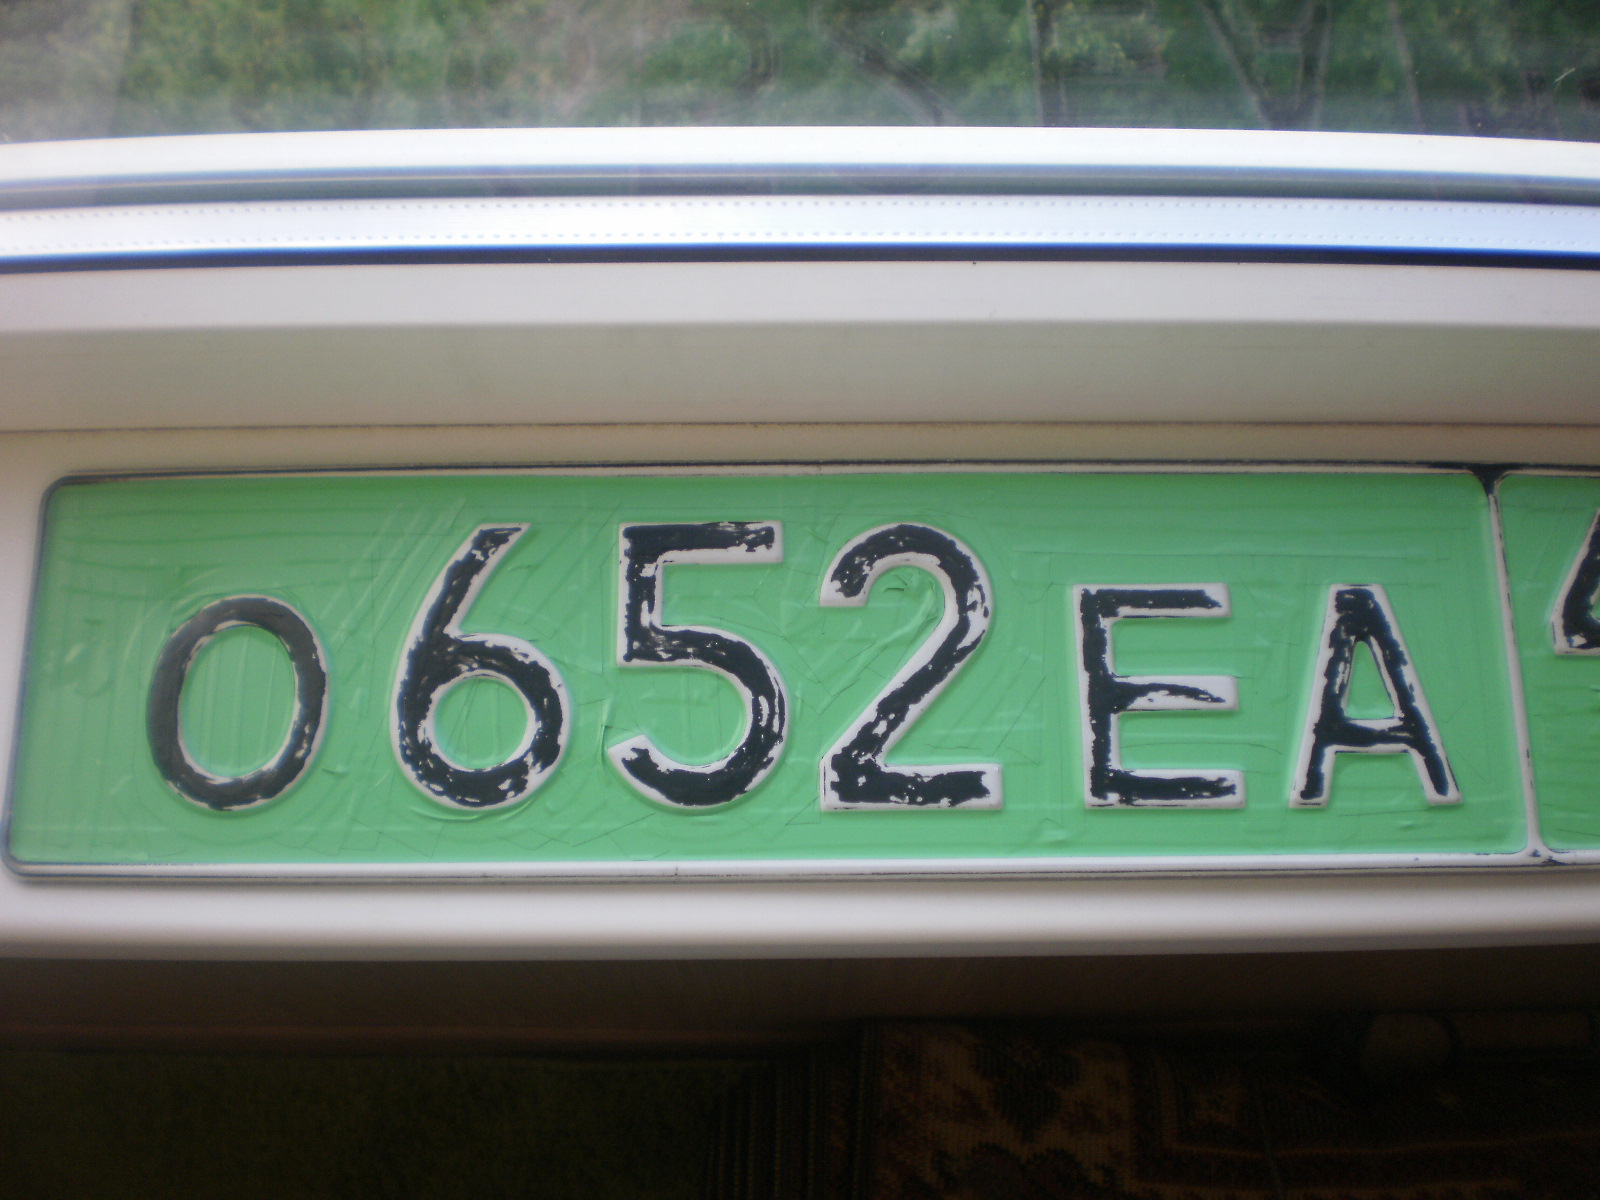 В первом номере зеленый. Зеленые госномера. Зелёный номер автомобиля. Зеленые номера ТМ. Зеленый гос номер на автомобиле.